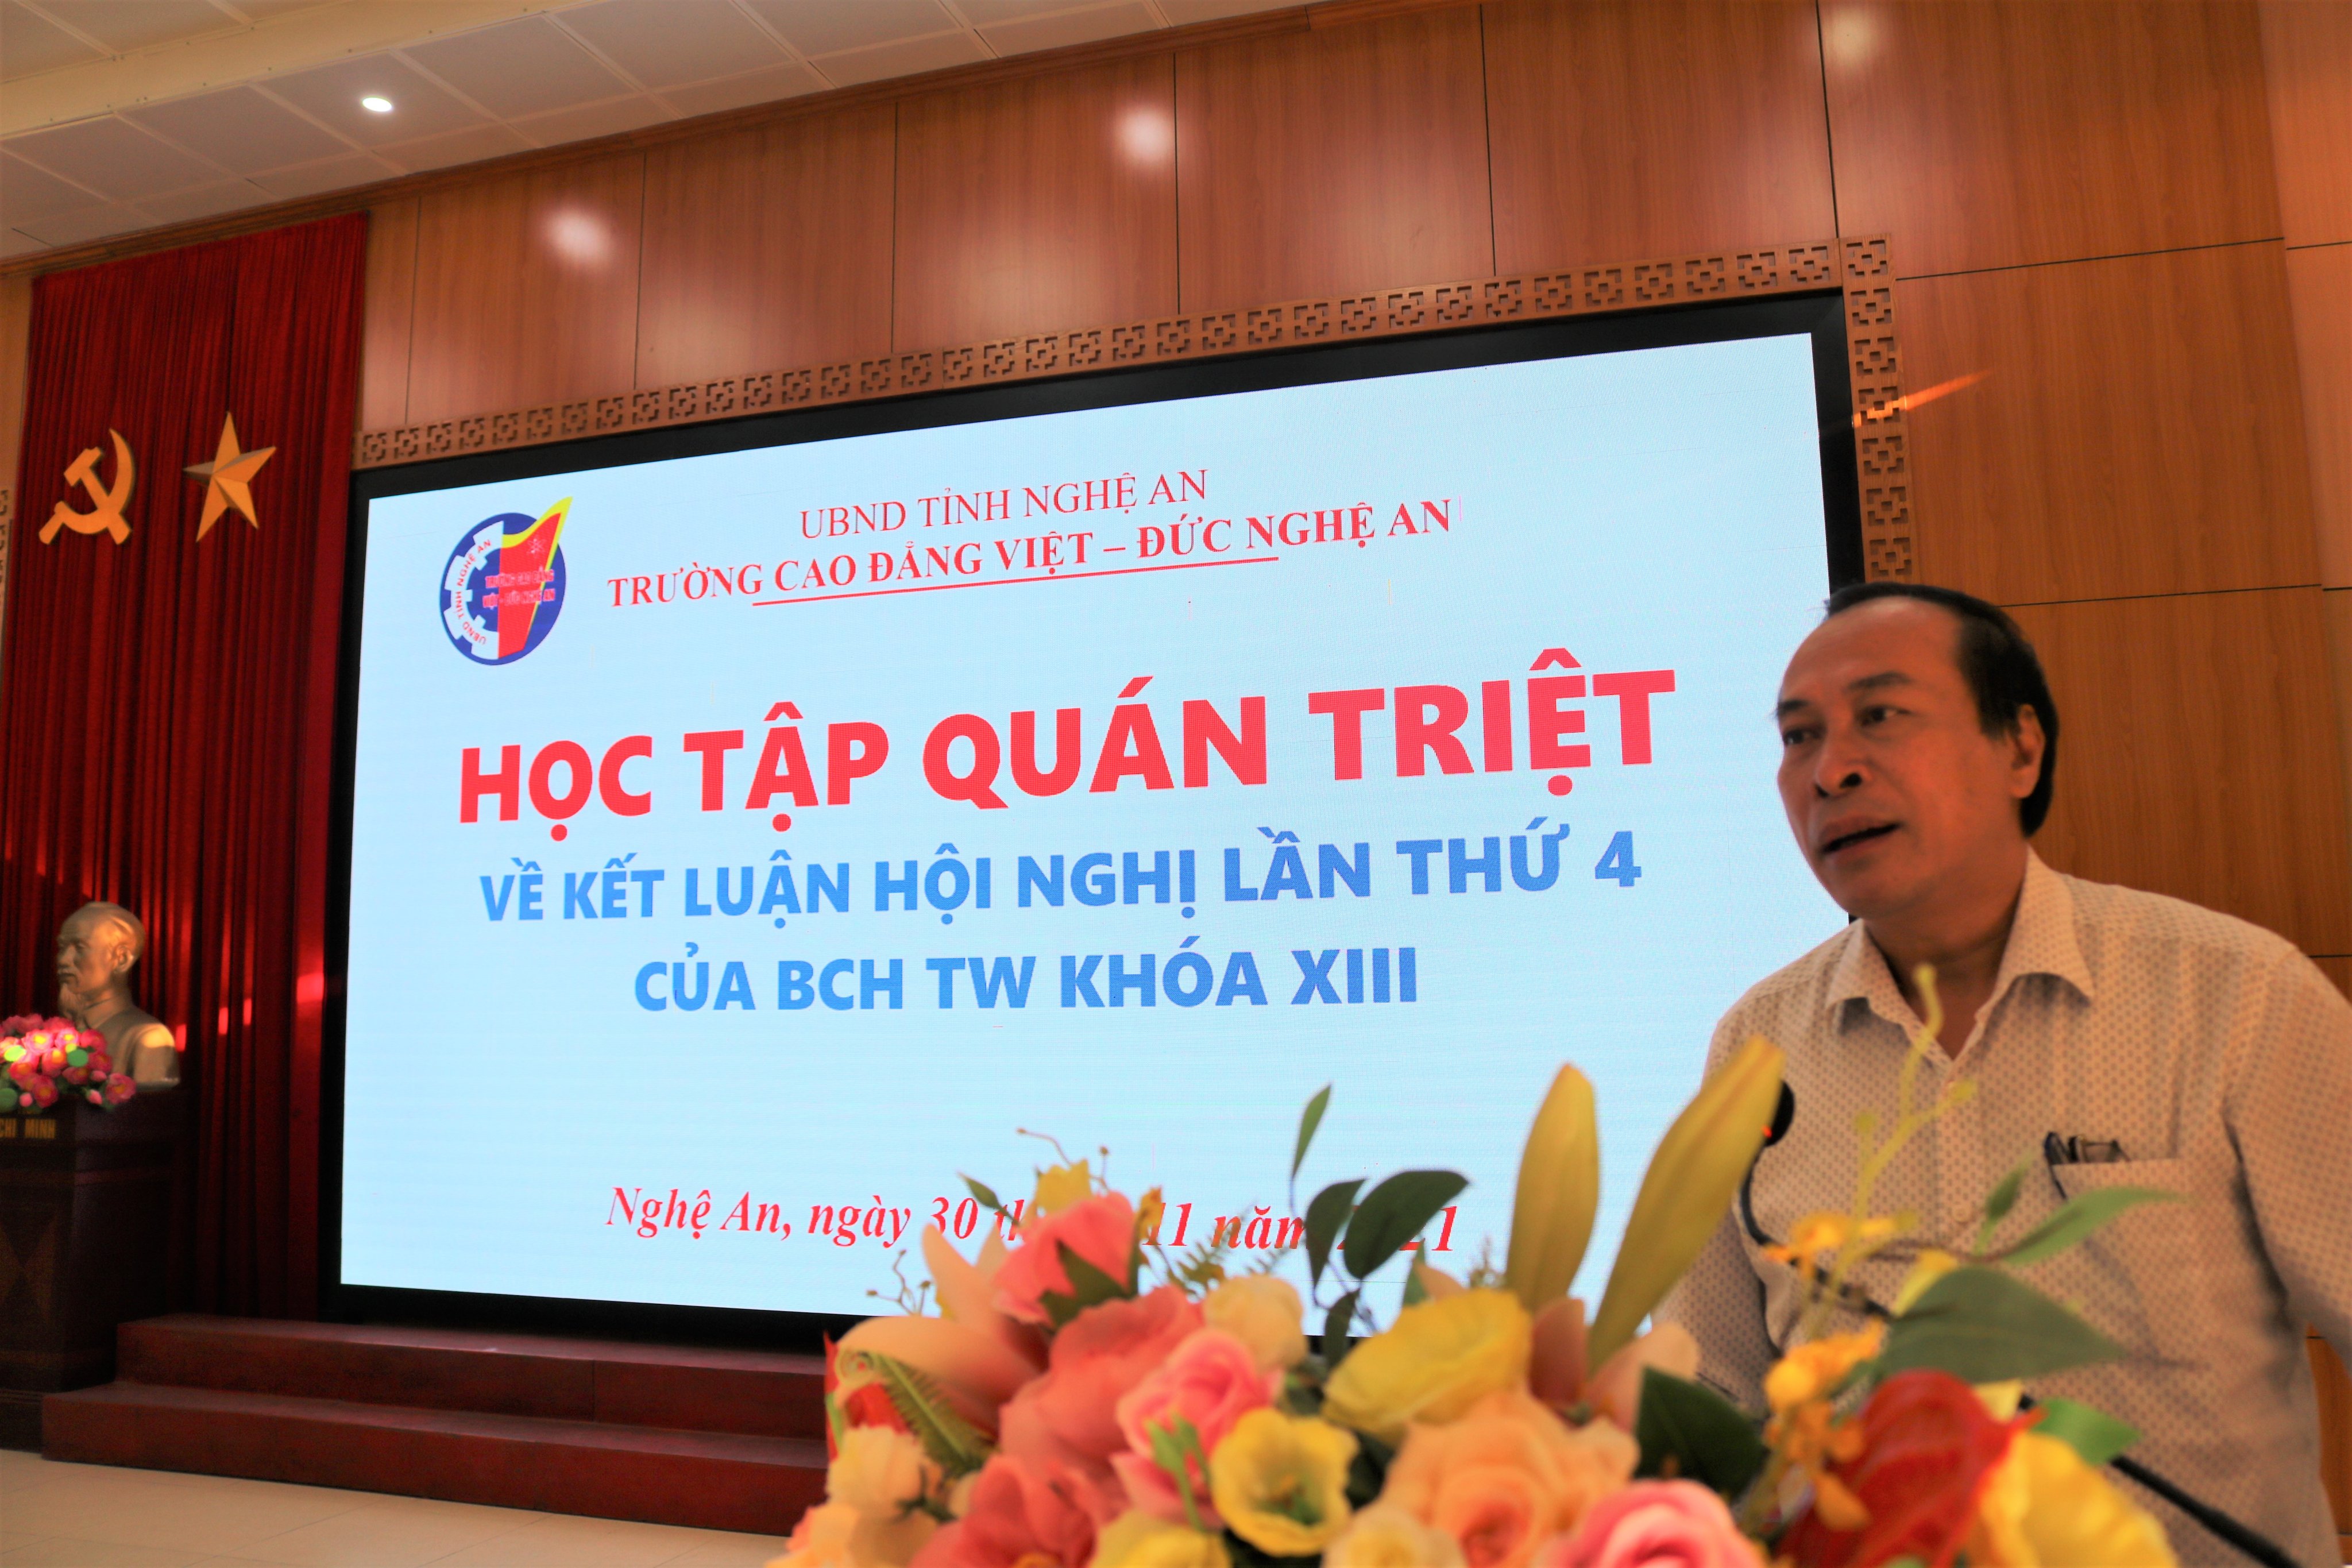  Trường Cao đẳng Việt – Đức Nghệ An tổ chức học tập quán triệt về kết luận Hội nghị lần thứ 4 của Ban Chấp hành Trung ương khóa XIII